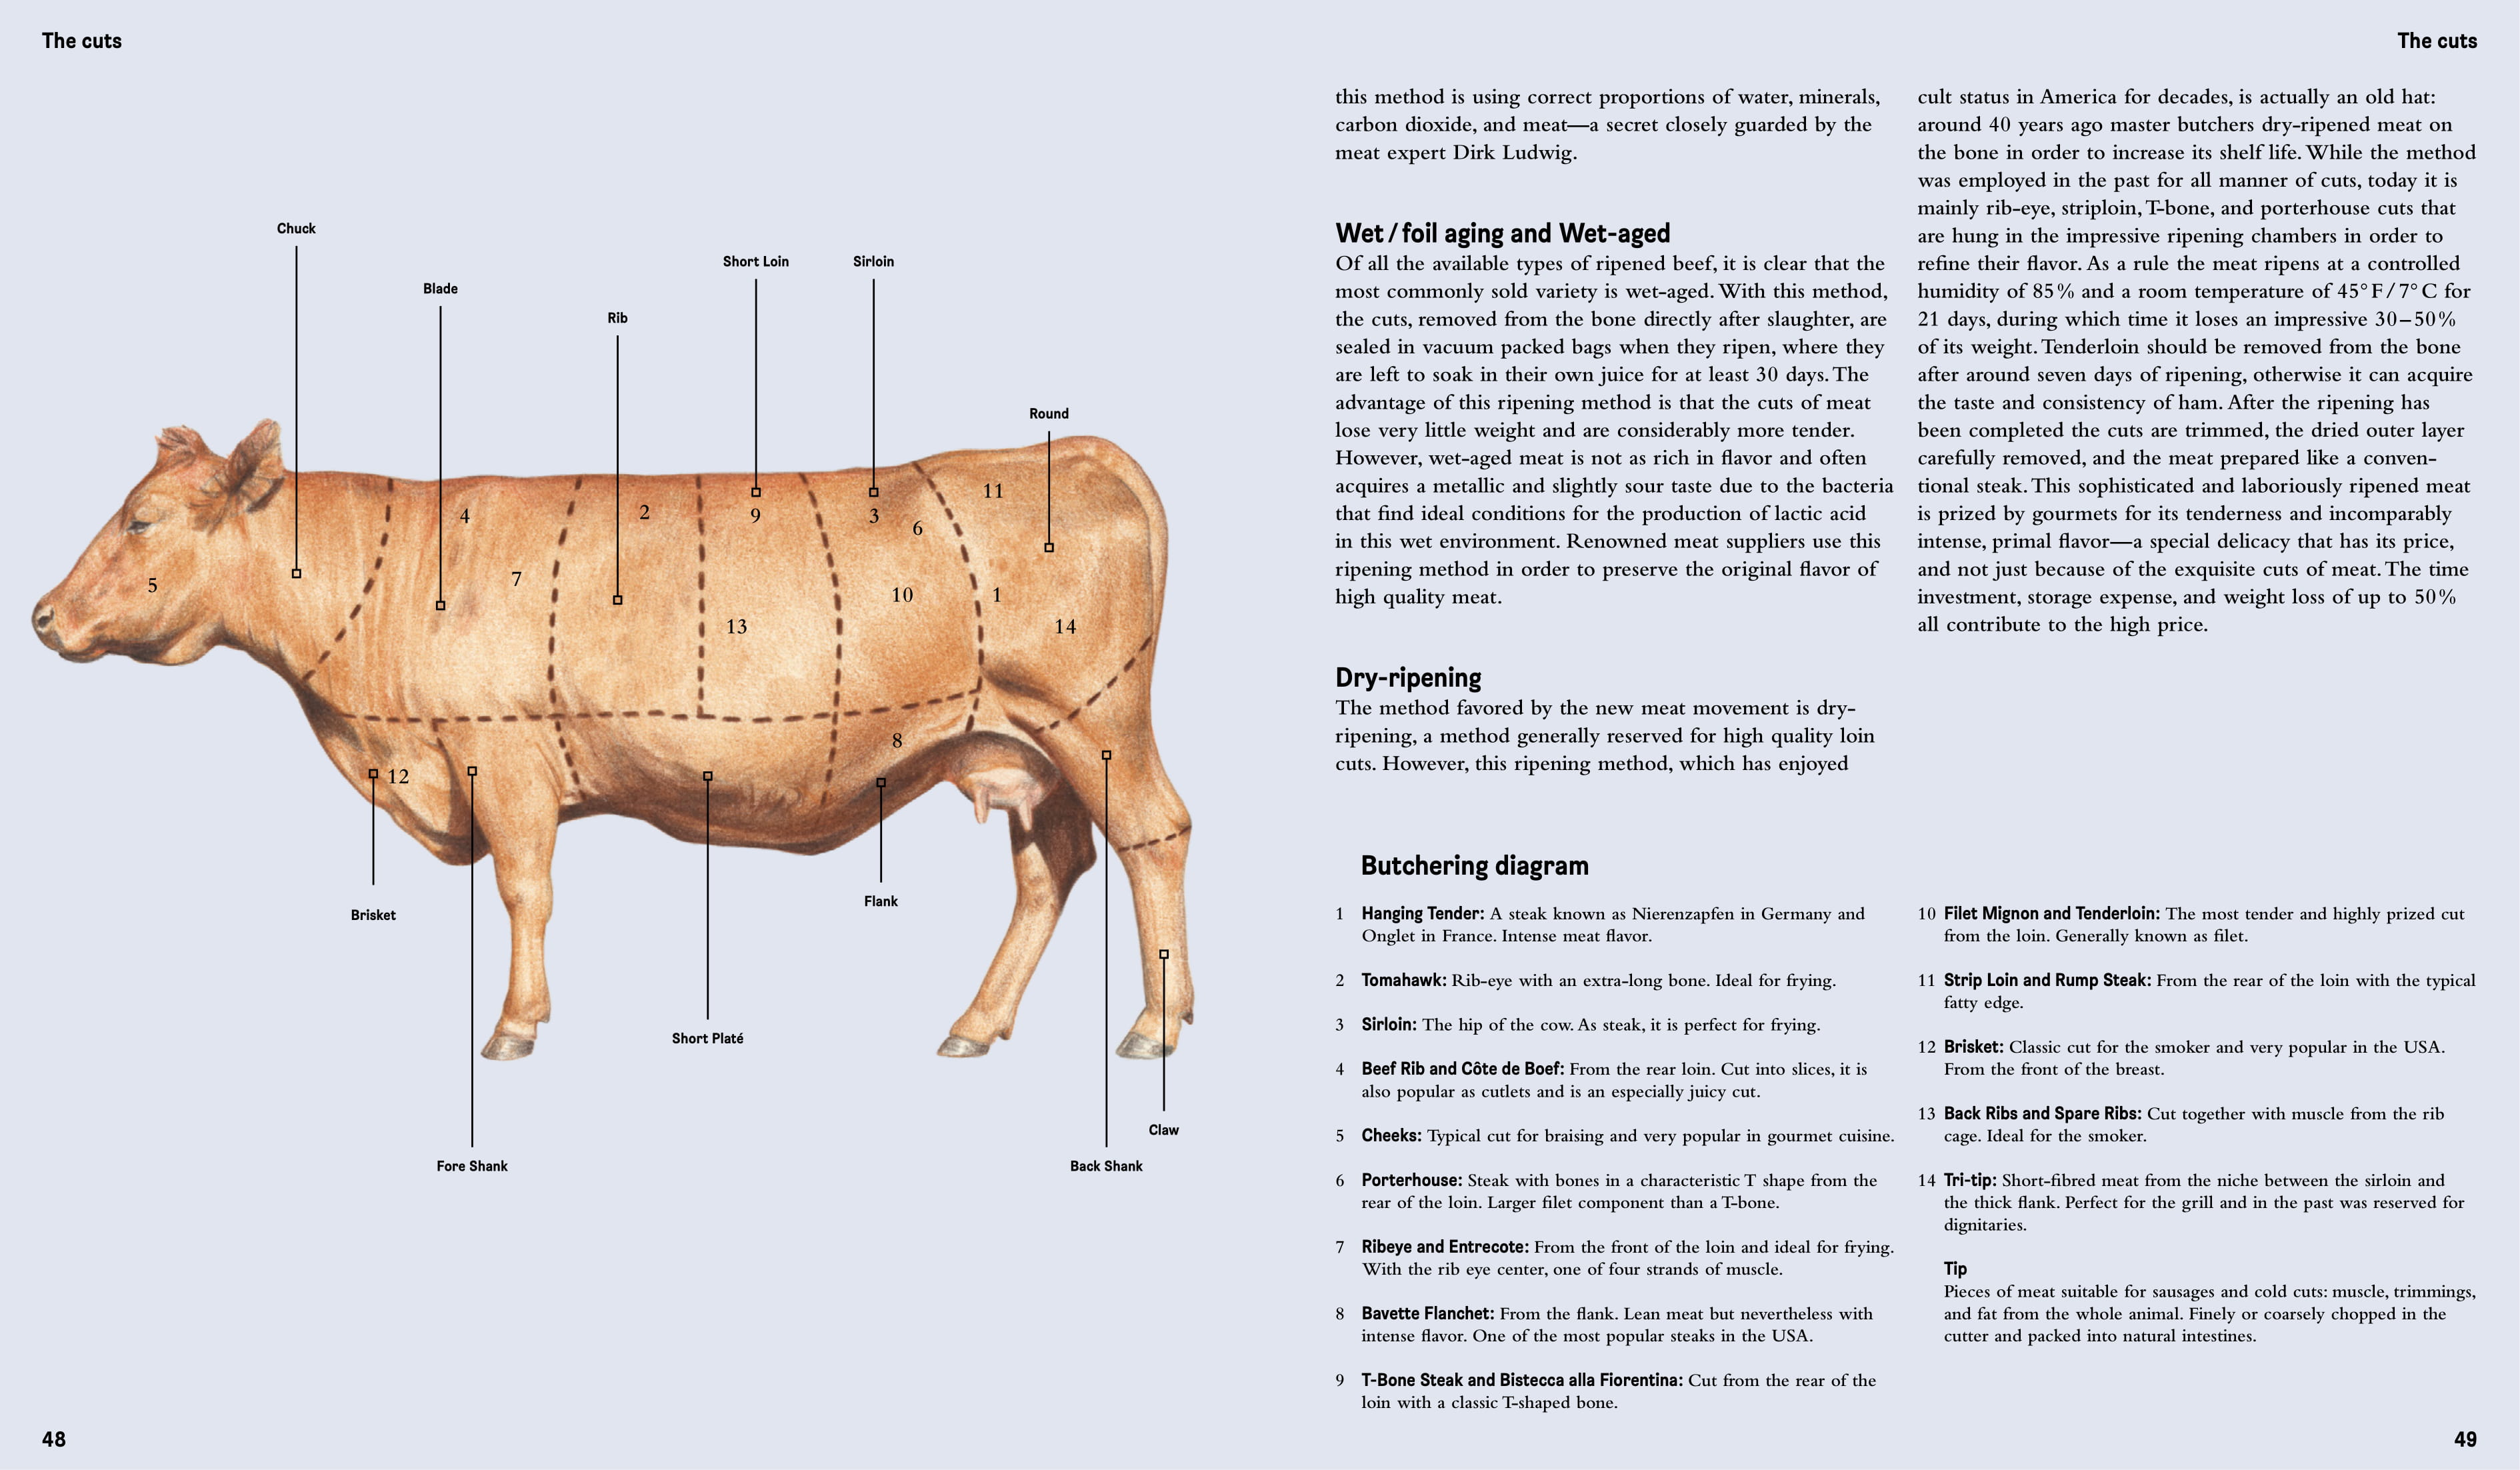 By Hendrik Haase, Robert Klanten and Sven Ehmann from Crafted Meat copyright Gestalten 2015